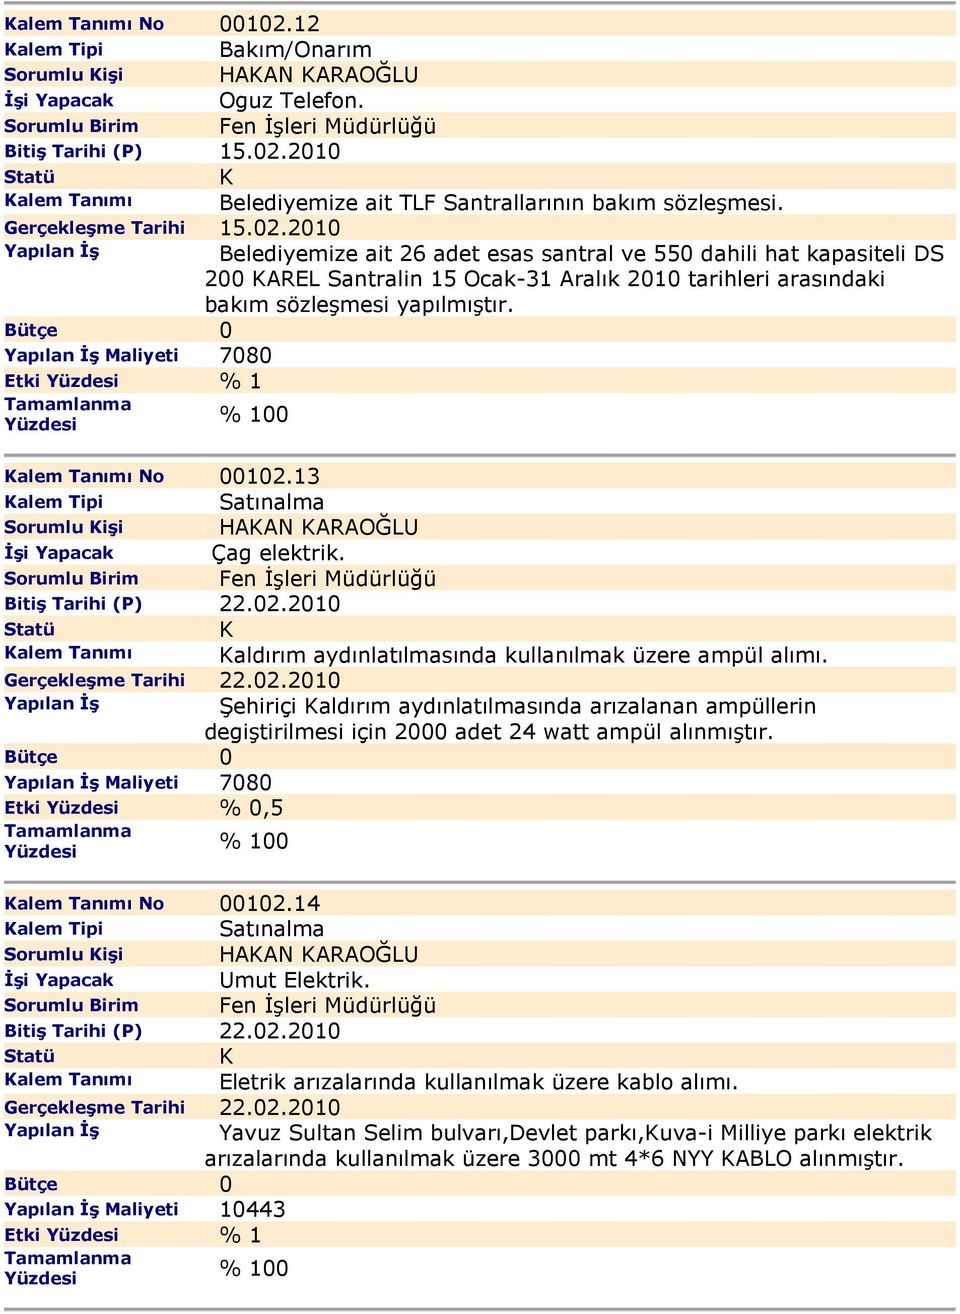 2010 Yapılan Đş Belediyemize ait 26 adet esas santral ve 550 dahili hat kapasiteli DS 200 AREL Santralin 15 Ocak-31 Aralık 2010 tarihleri arasındaki bakım sözleşmesi yapılmıştır.